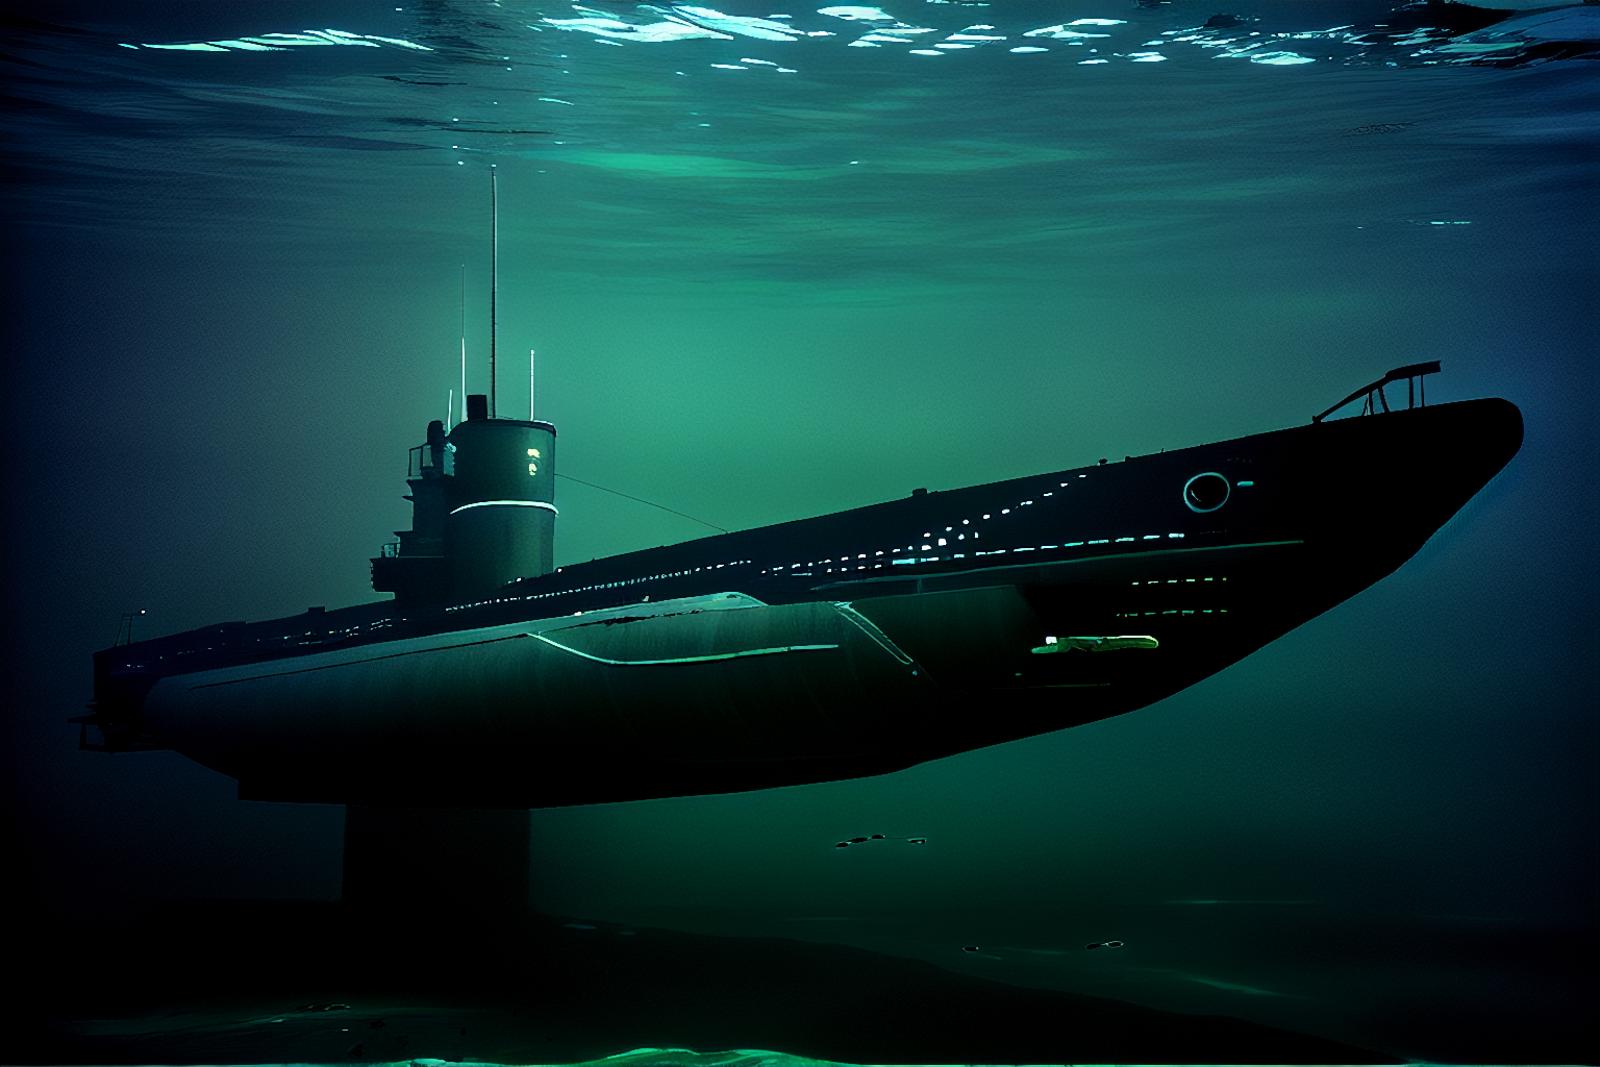 U-Boat Submarine image by MajMorse